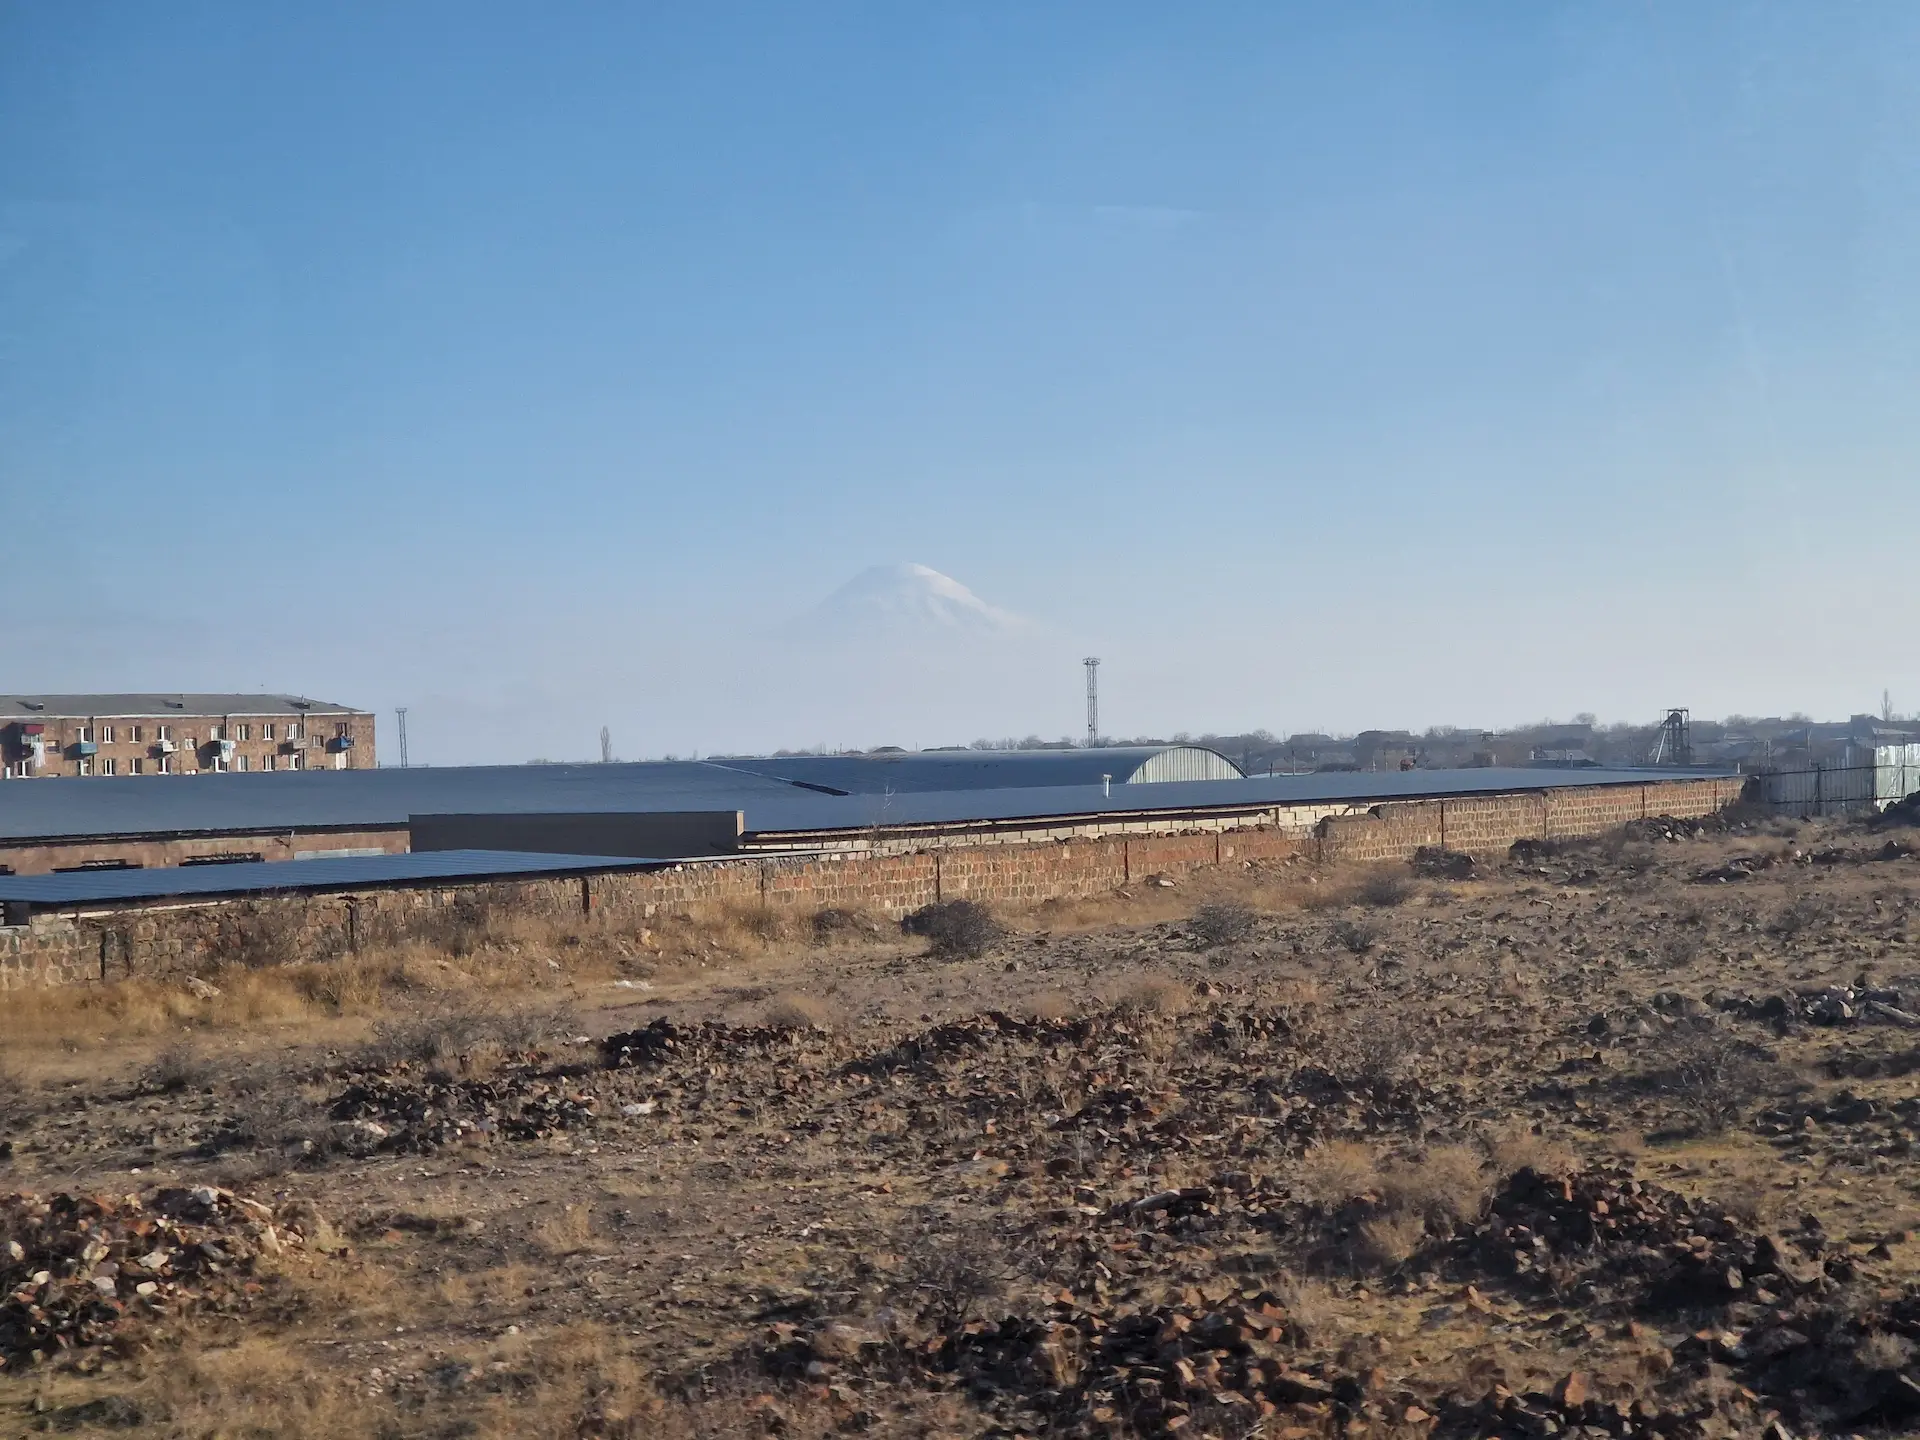 Vue du mont Ararat depuis le train, la montagne enneigée a l'air de flotter au loin, derrière le plateau arménien.